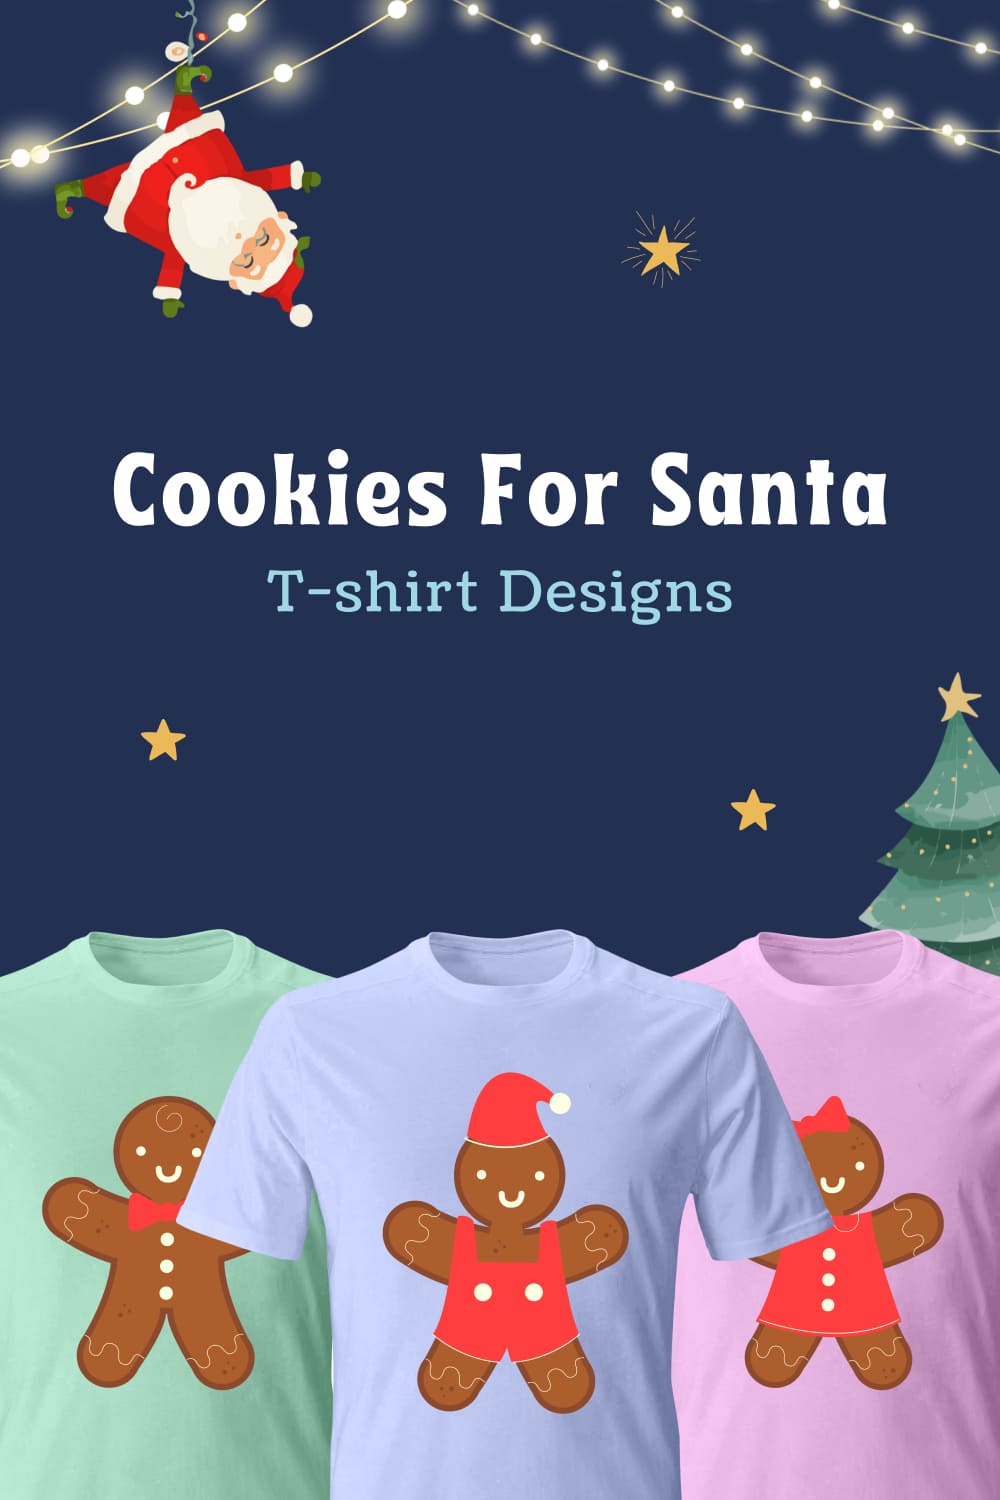 cookies for santa t shirt designs 03 783